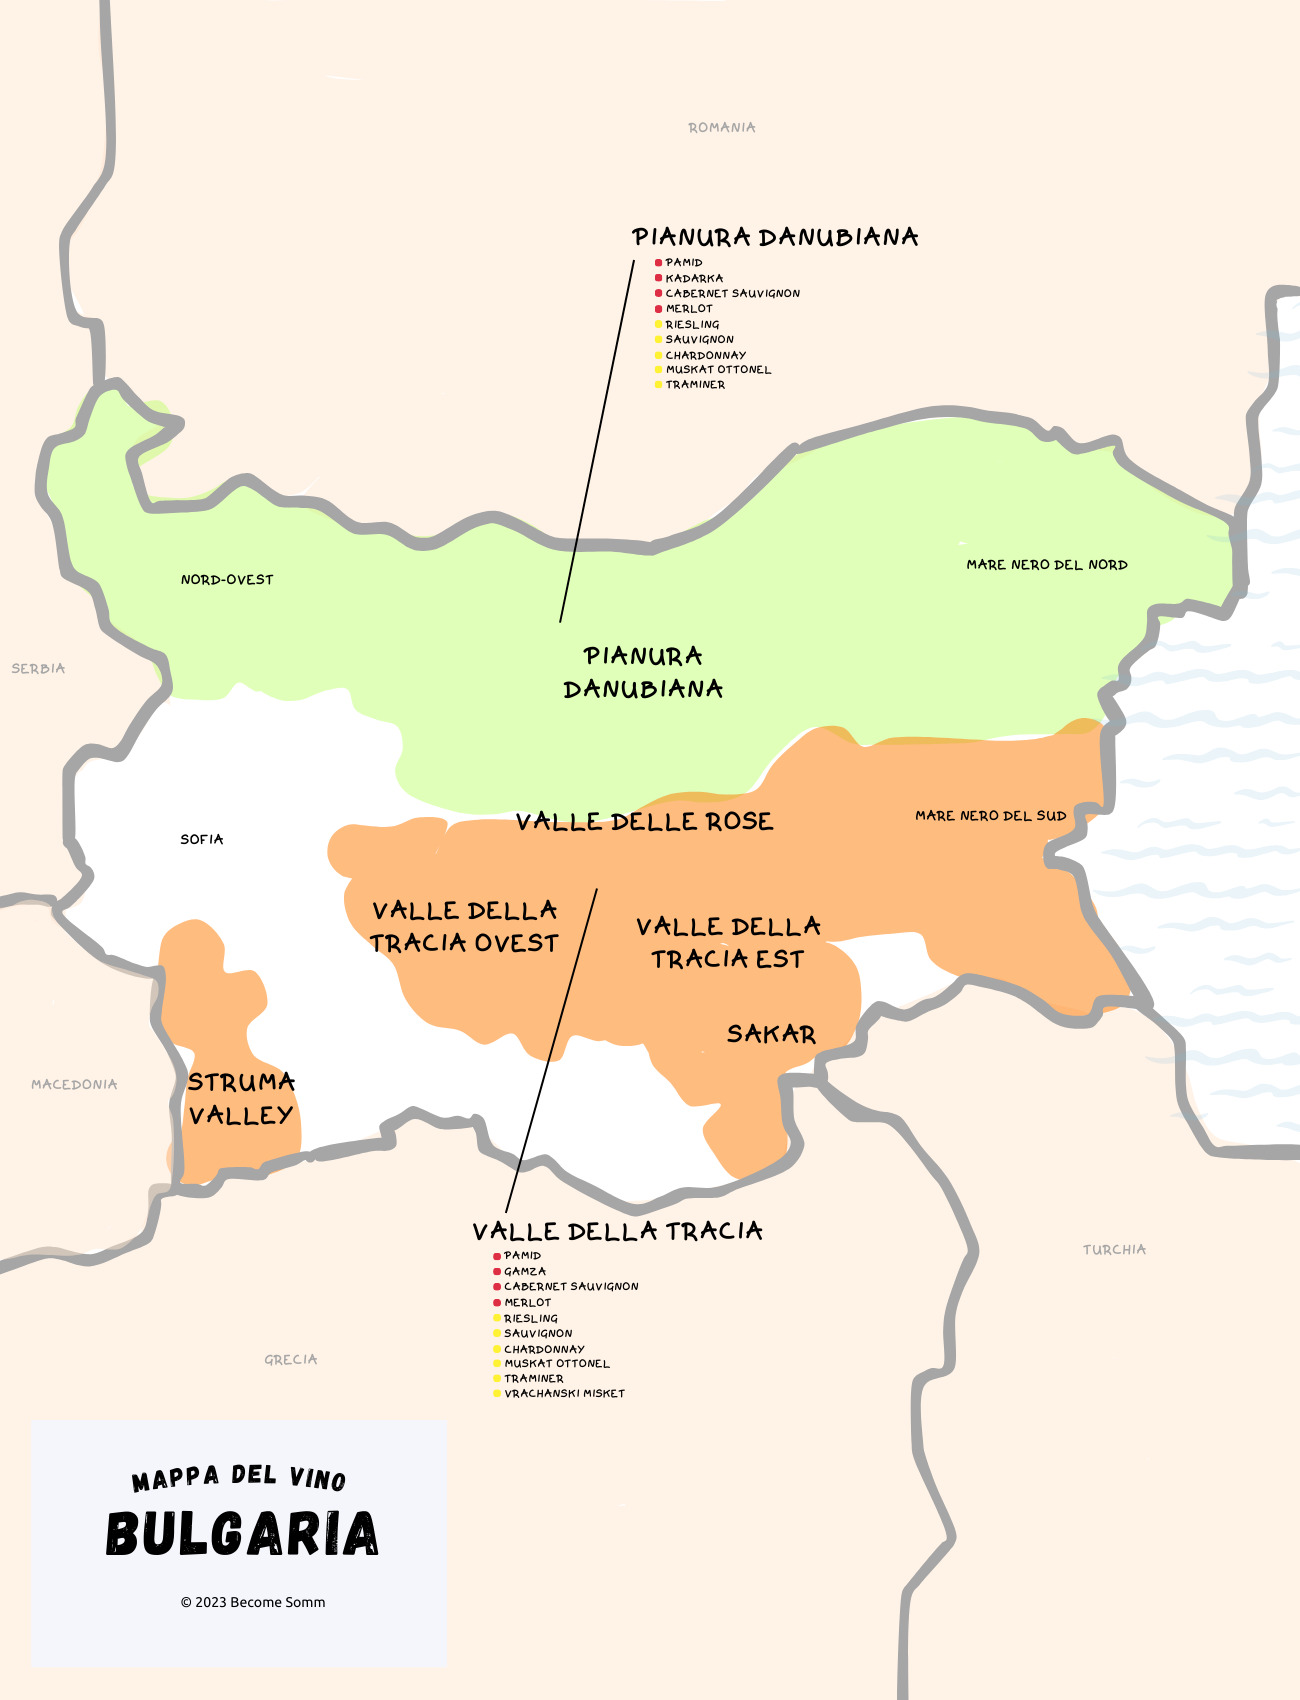 Wine Map Mappa del vino Bulgaria 